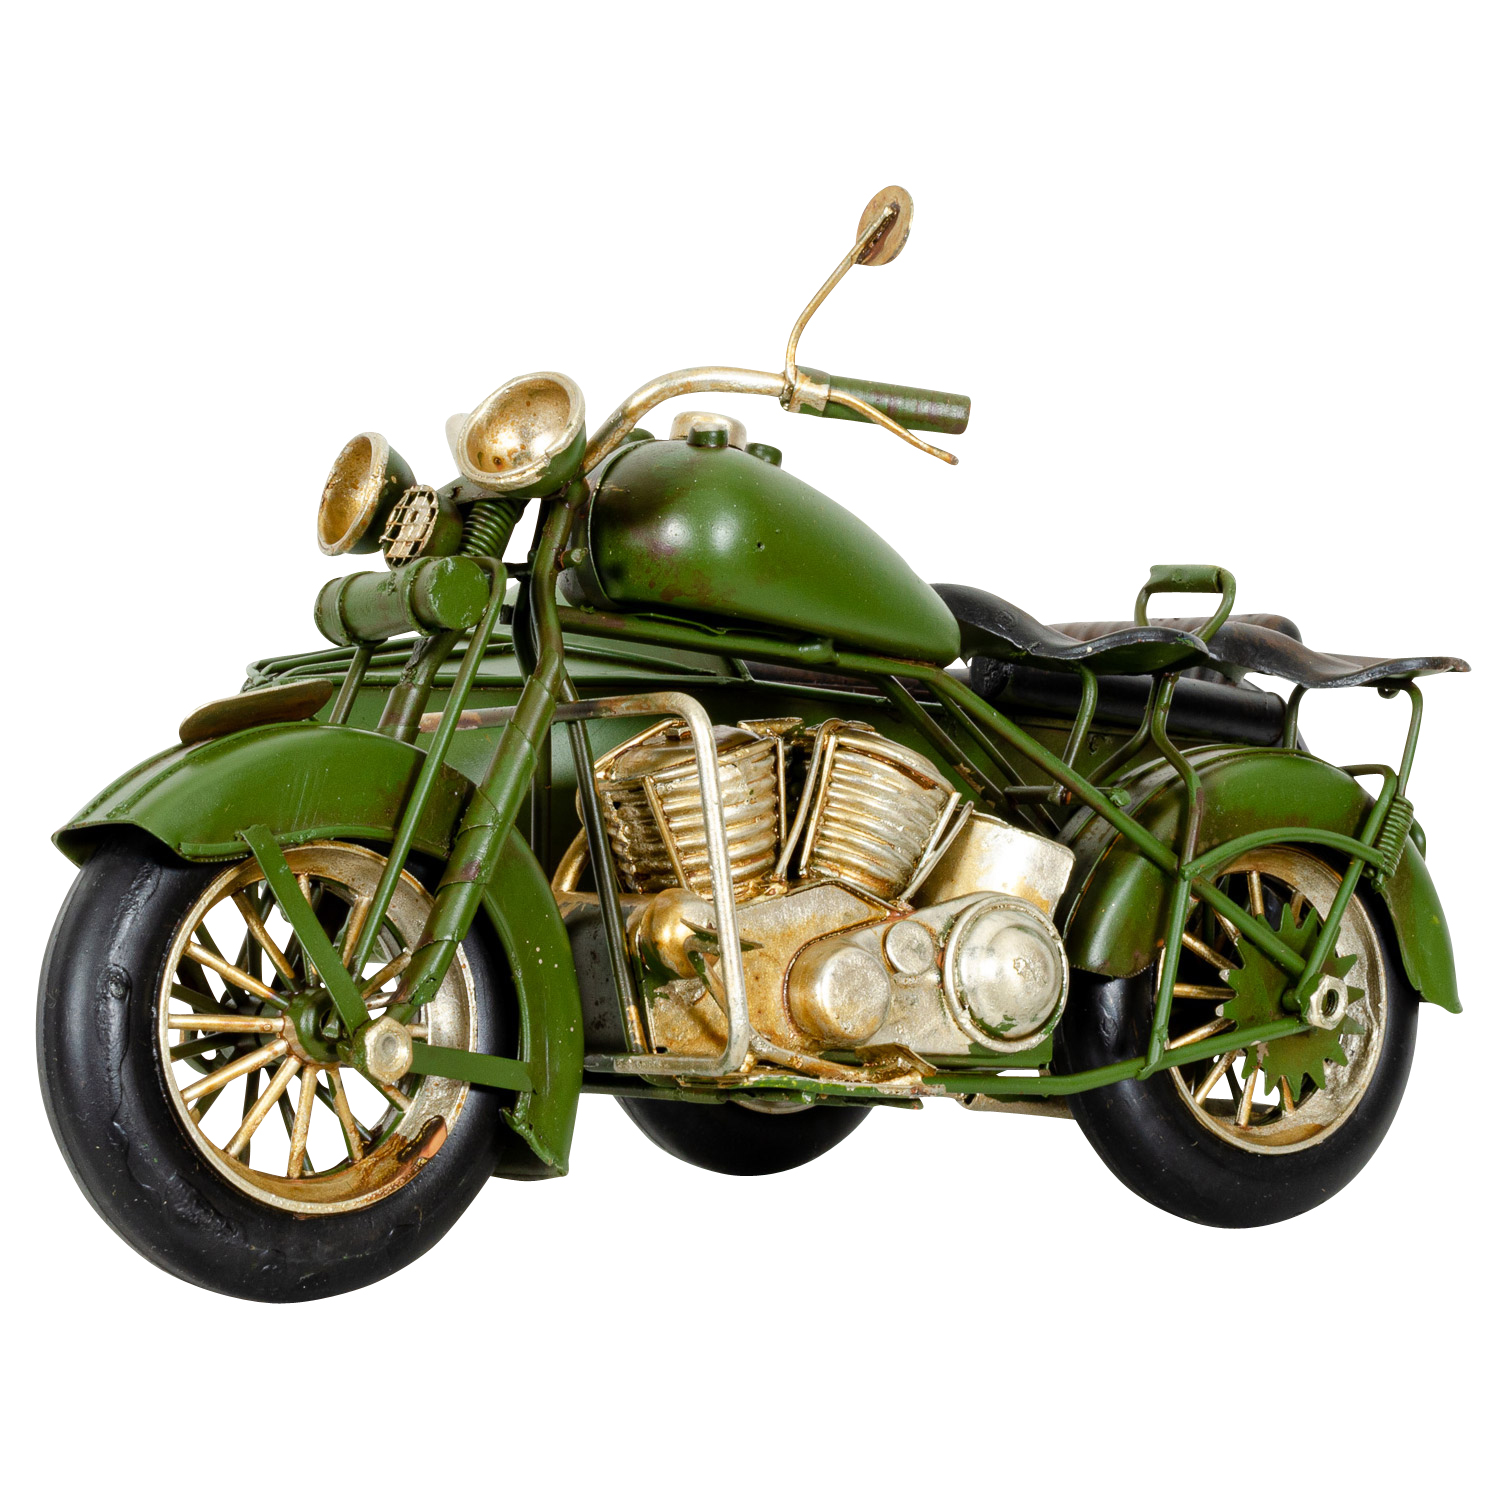 Aubaho Motocicleta Tiro Modelo Moto Nostalgia Hoja Metal Chapa Estilo Antiguo 29cm 